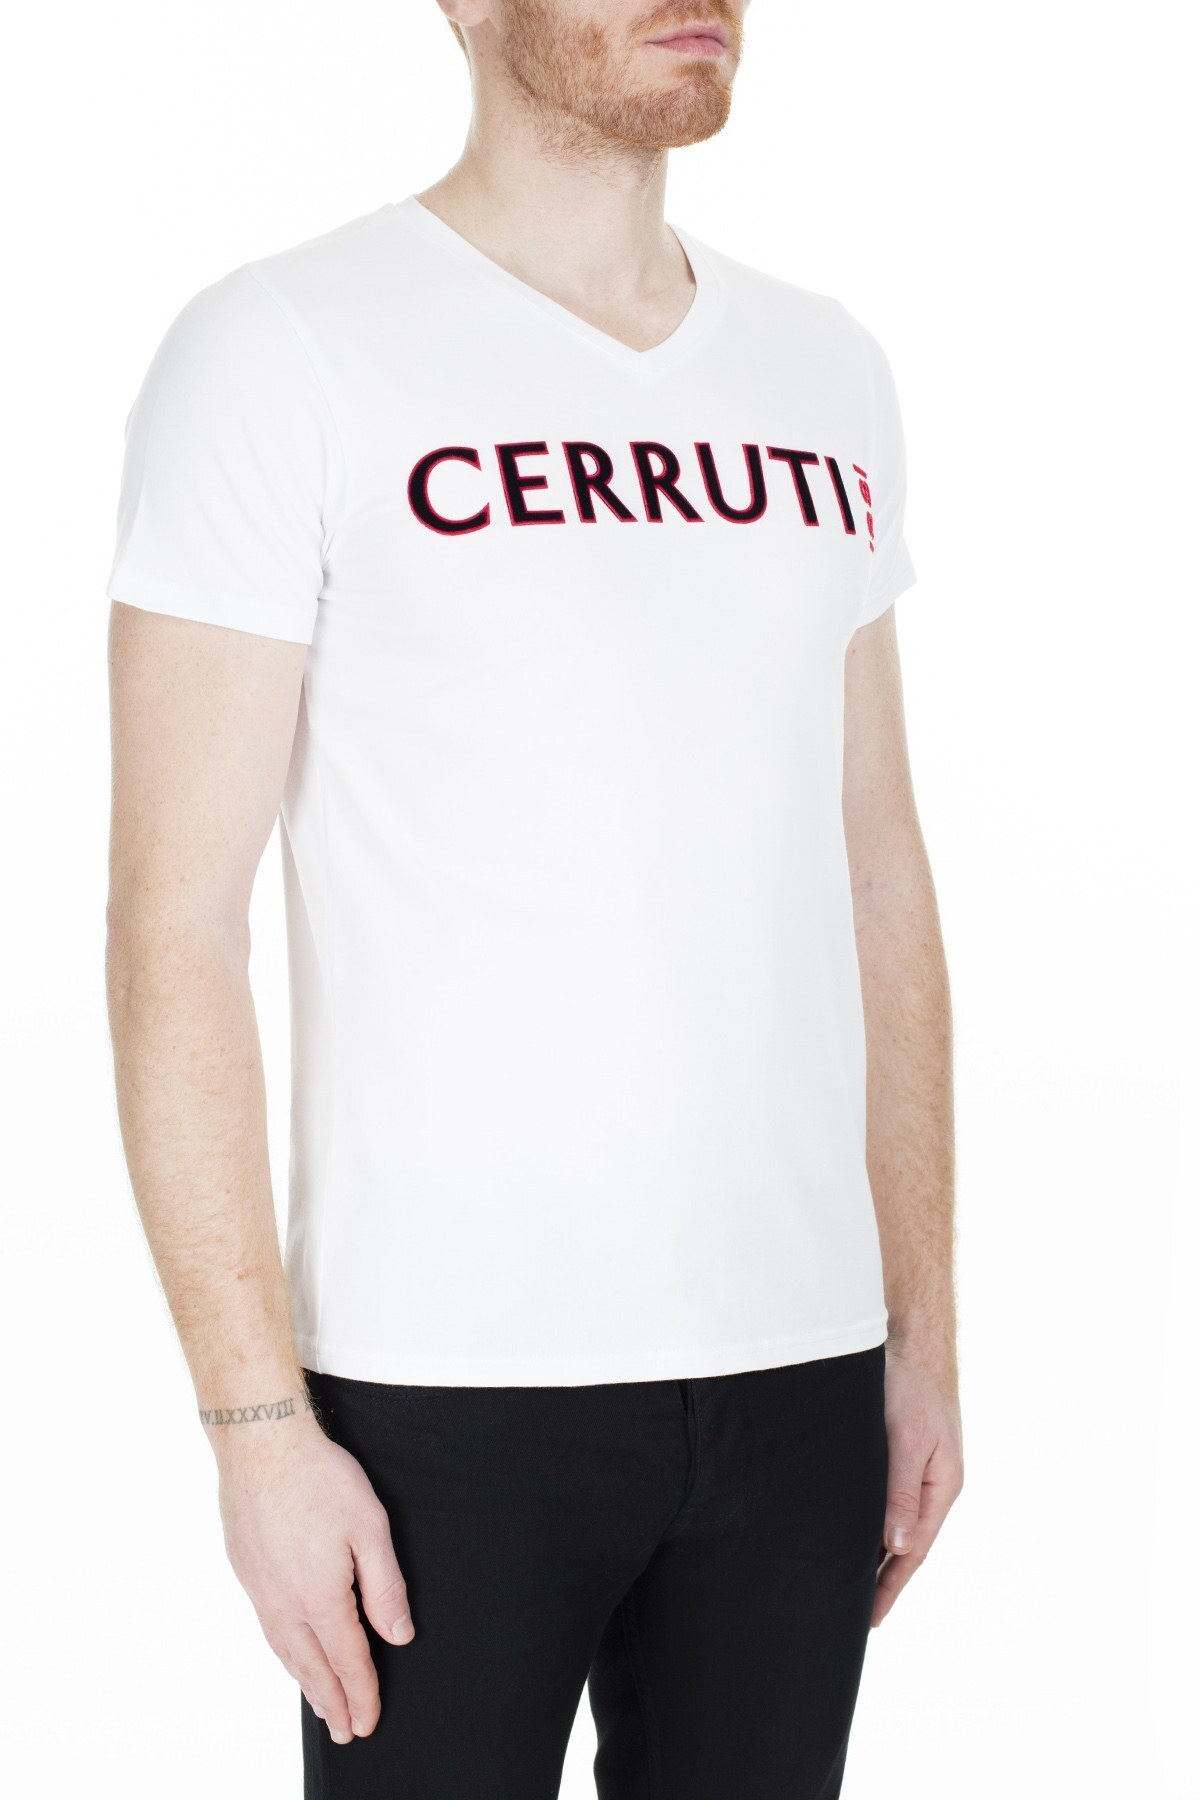 Cerruti 1881 Erkek T Shirt 203-001645 BEYAZ